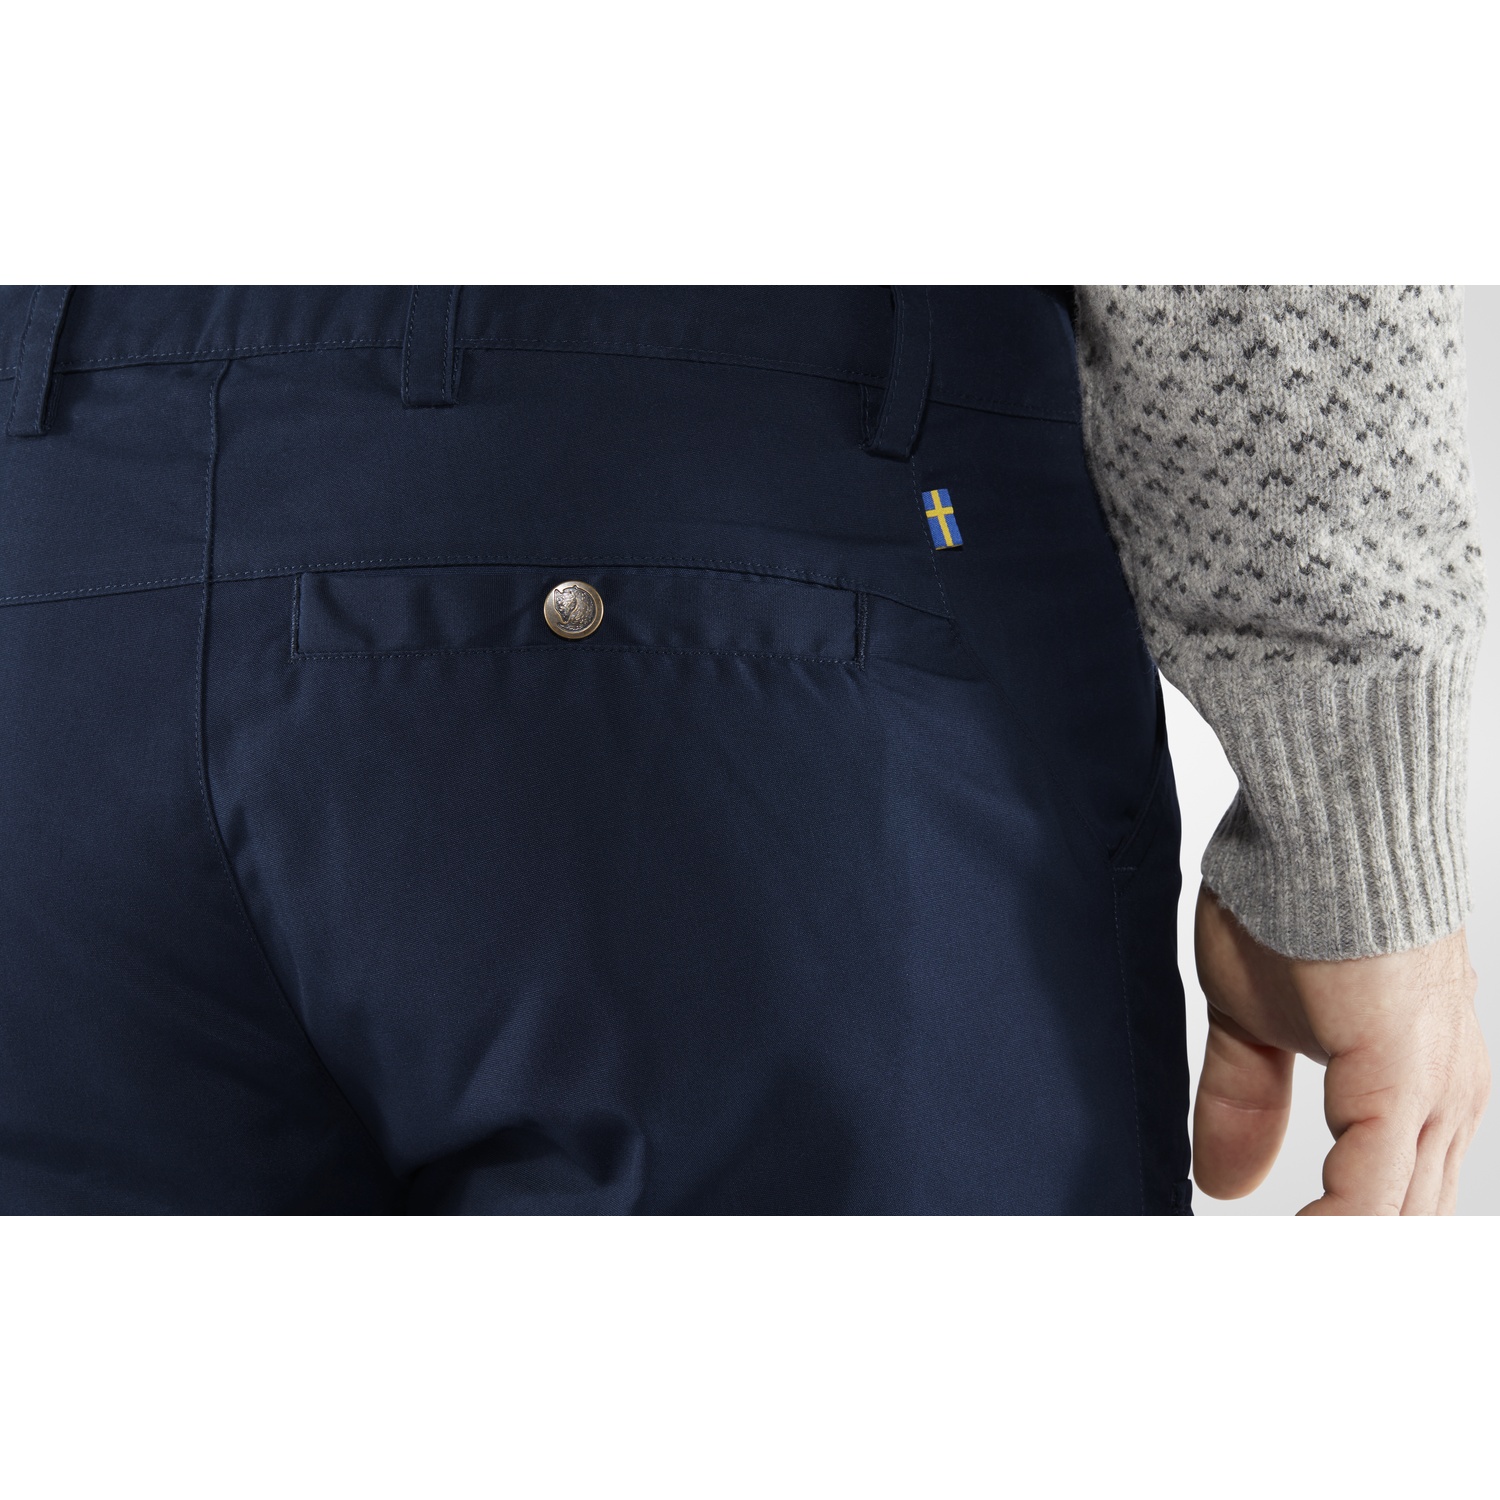 Nils Sportswear Snow Pants Womens 32 Blue Made in USA Windbreaker Logo Warm